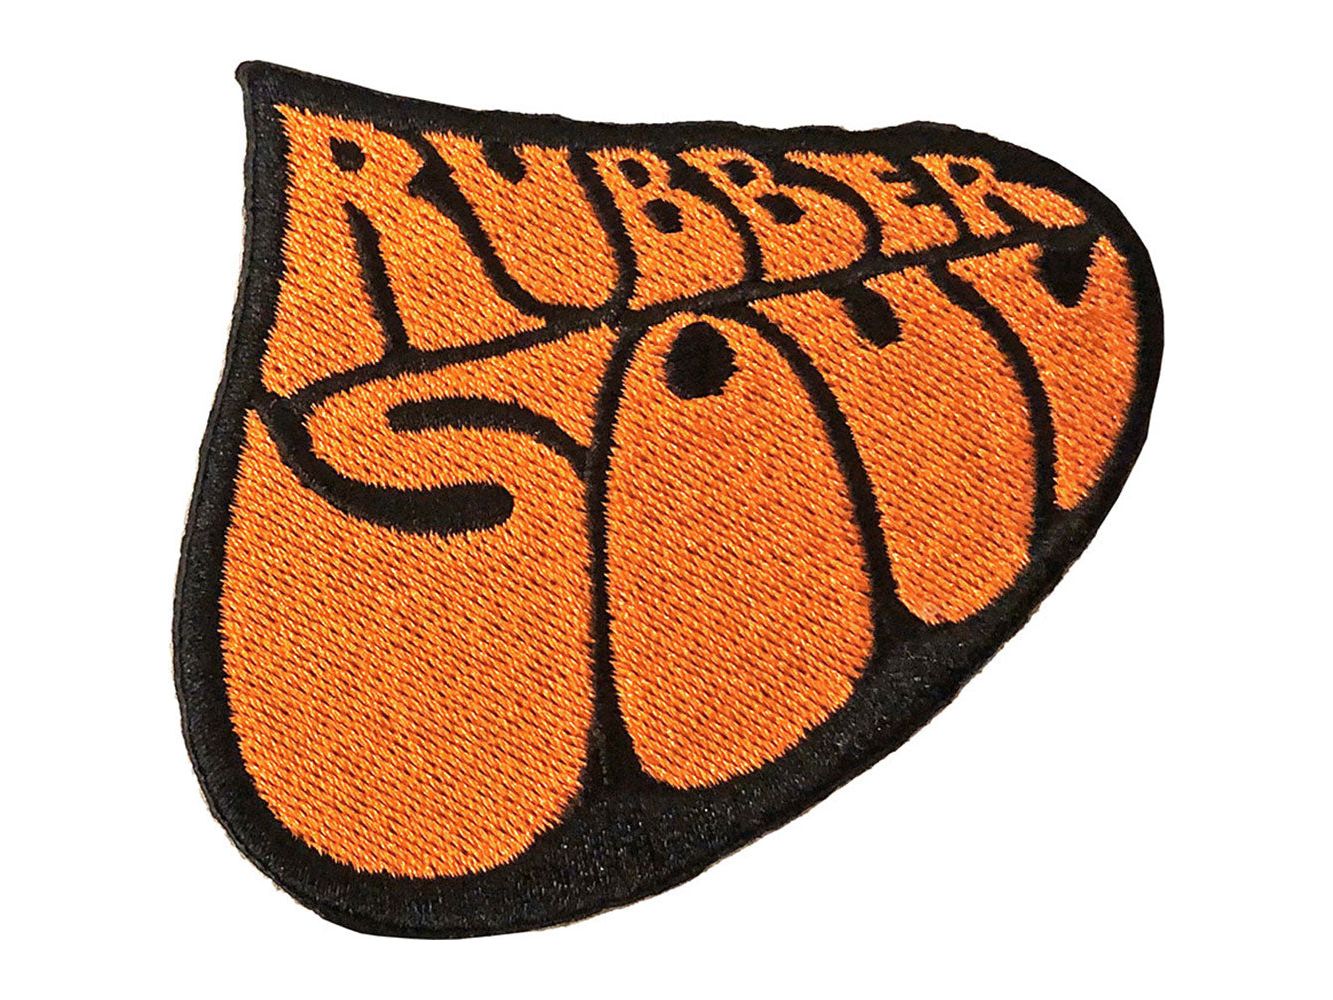 The Beatles Standard Patch Rubber Soul Album